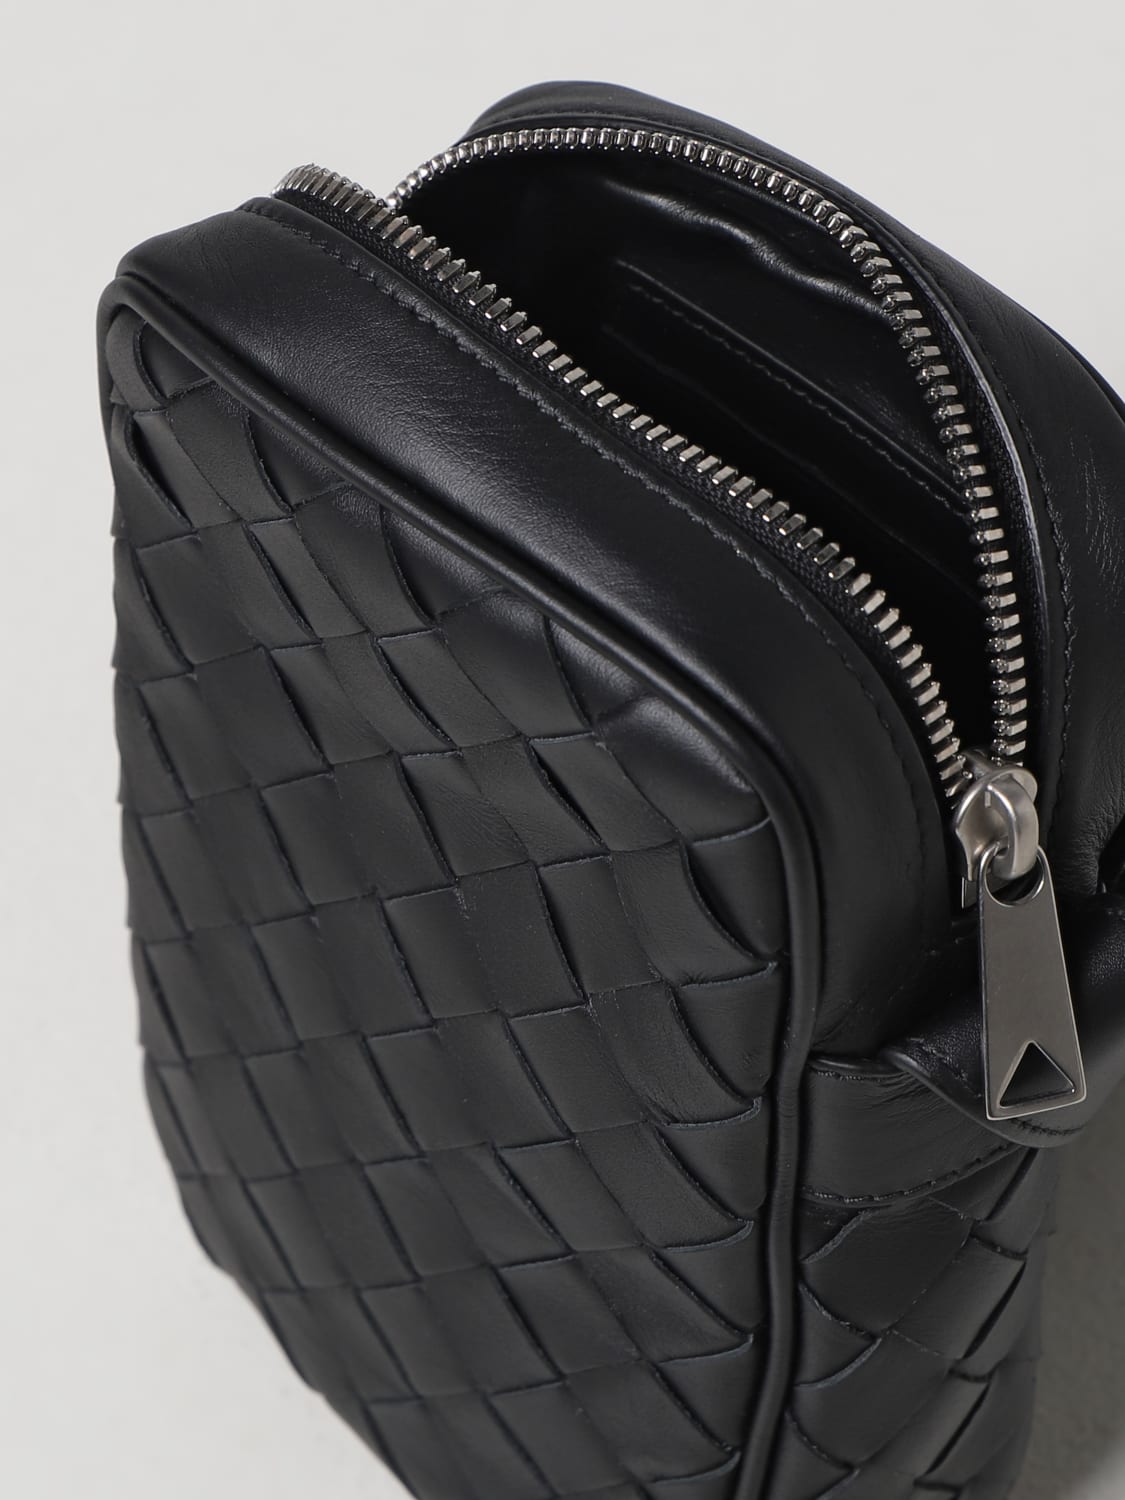 BOTTEGA VENETA: intrecciato leather smartphone case - Black  Bottega  Veneta shoulder bag 729296VCPQ3 online at